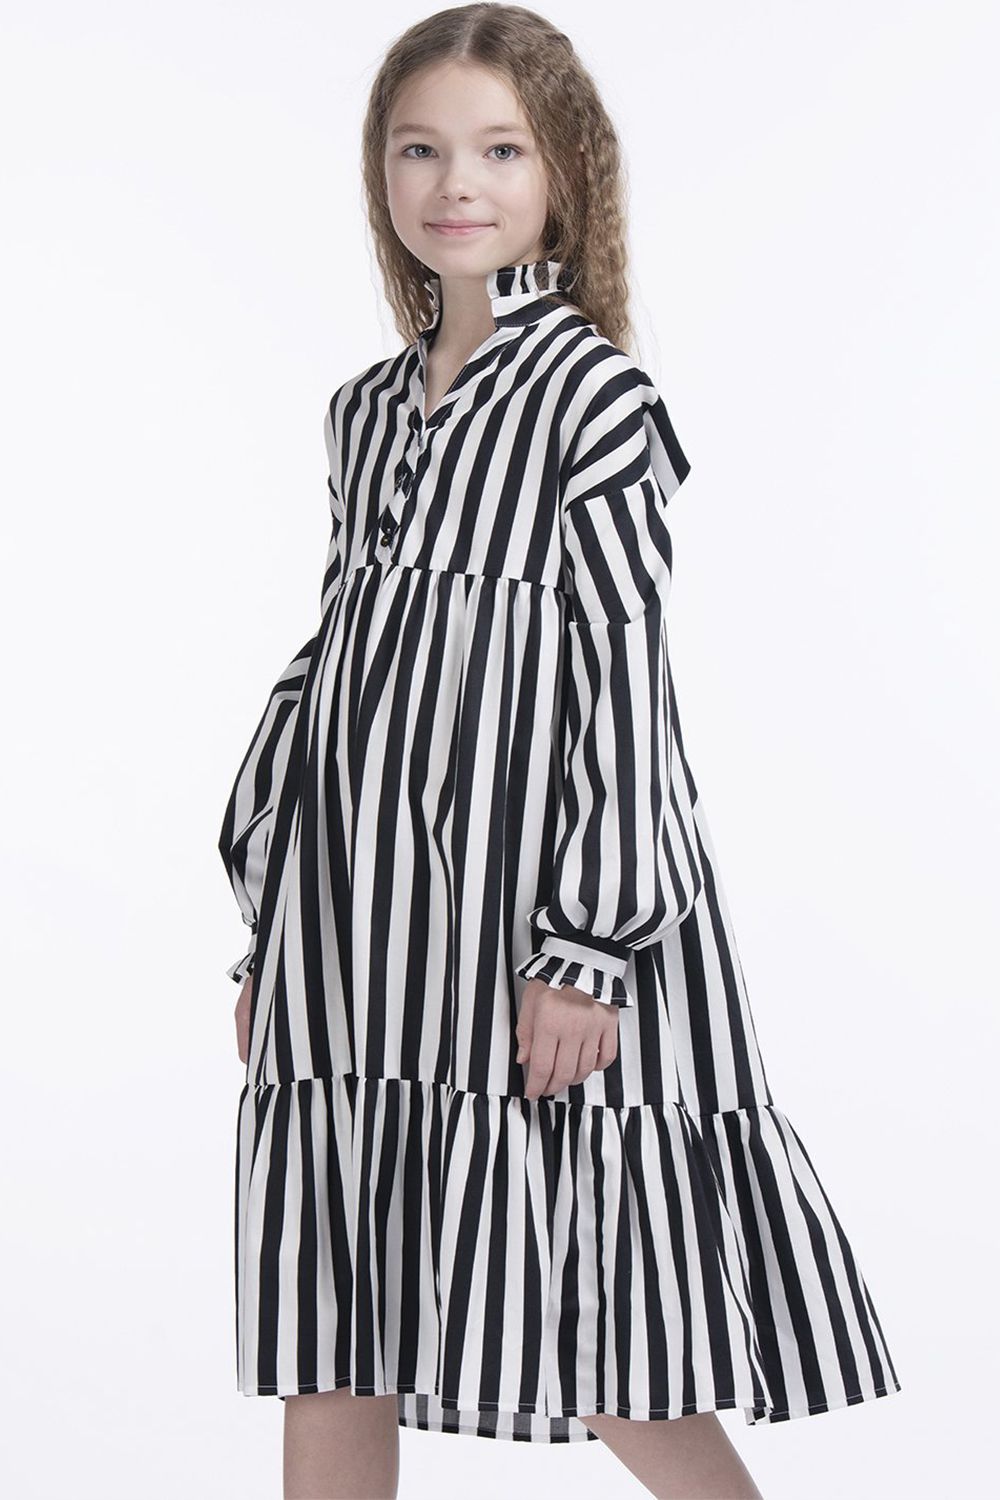 Платье Смена, размер 164-84, цвет черный 40026 - фото 1